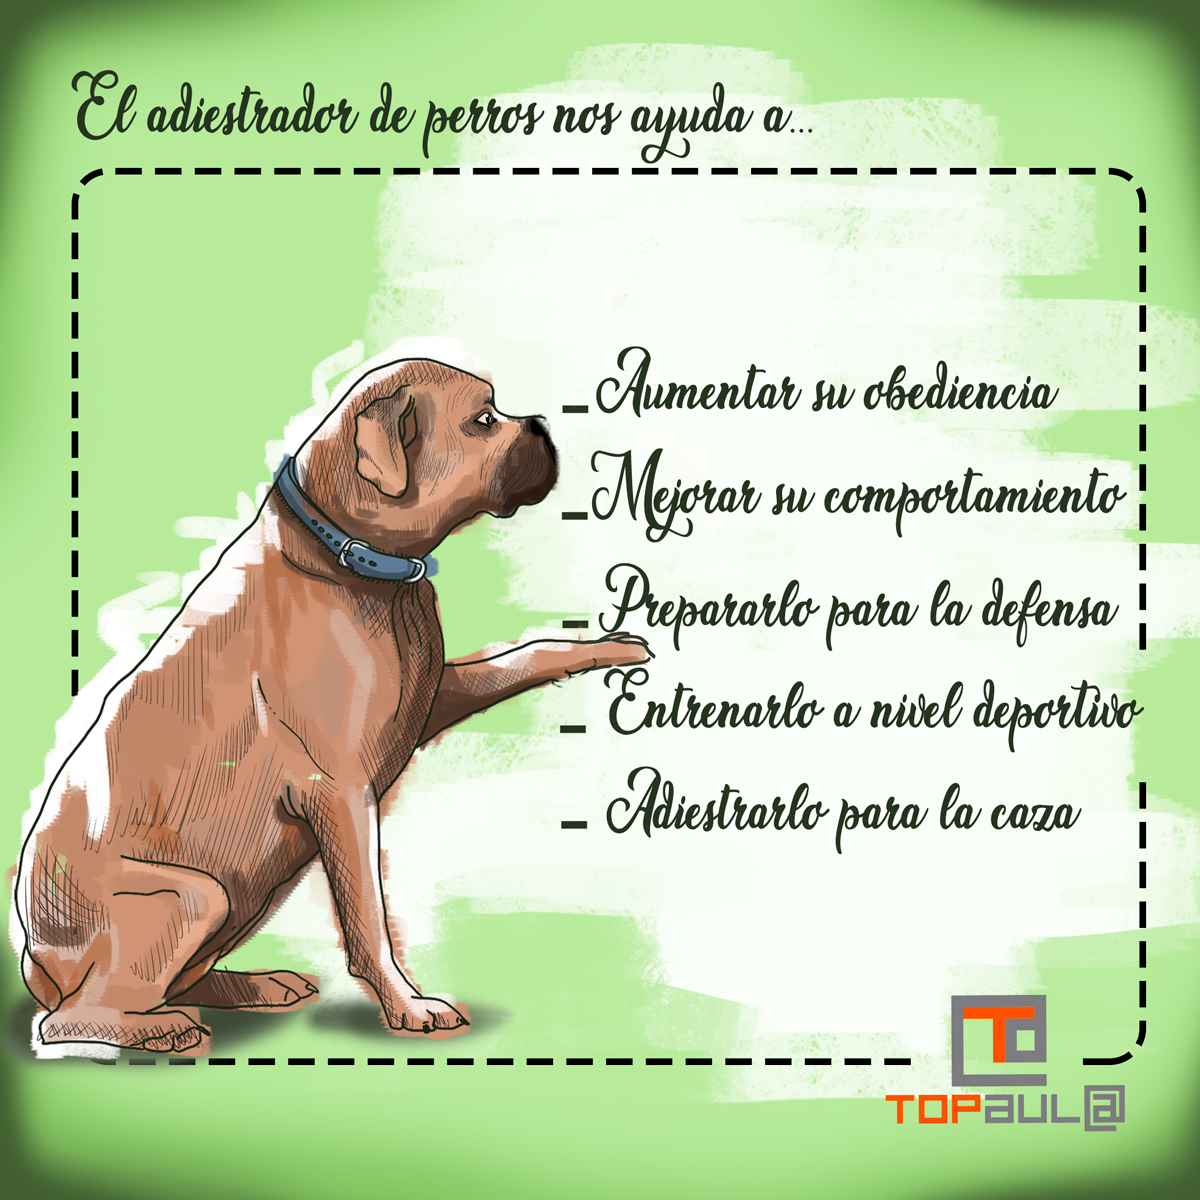 Infografía ¿Debería contratar los servicios de un adiestrador para mi perro? - www.topaula.com